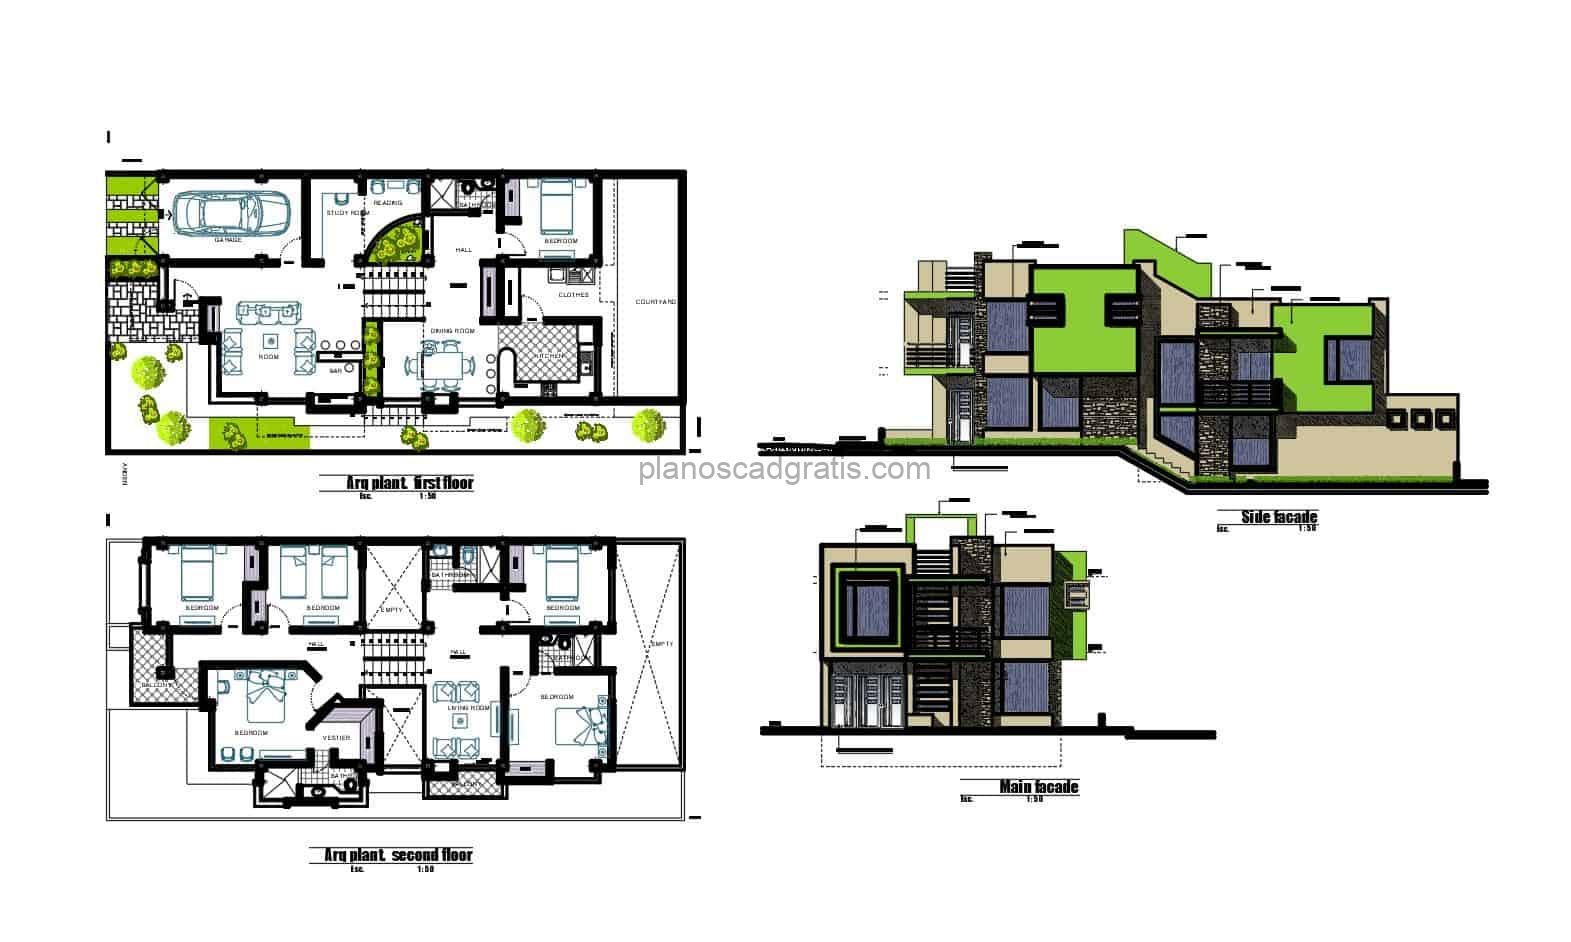 plano de casa moderna en formato dwg de autocad con planta arquitectonica y dimensionada, elevaciones y detalles constructivos, planos para descarga gratis en formato dwg de autocad